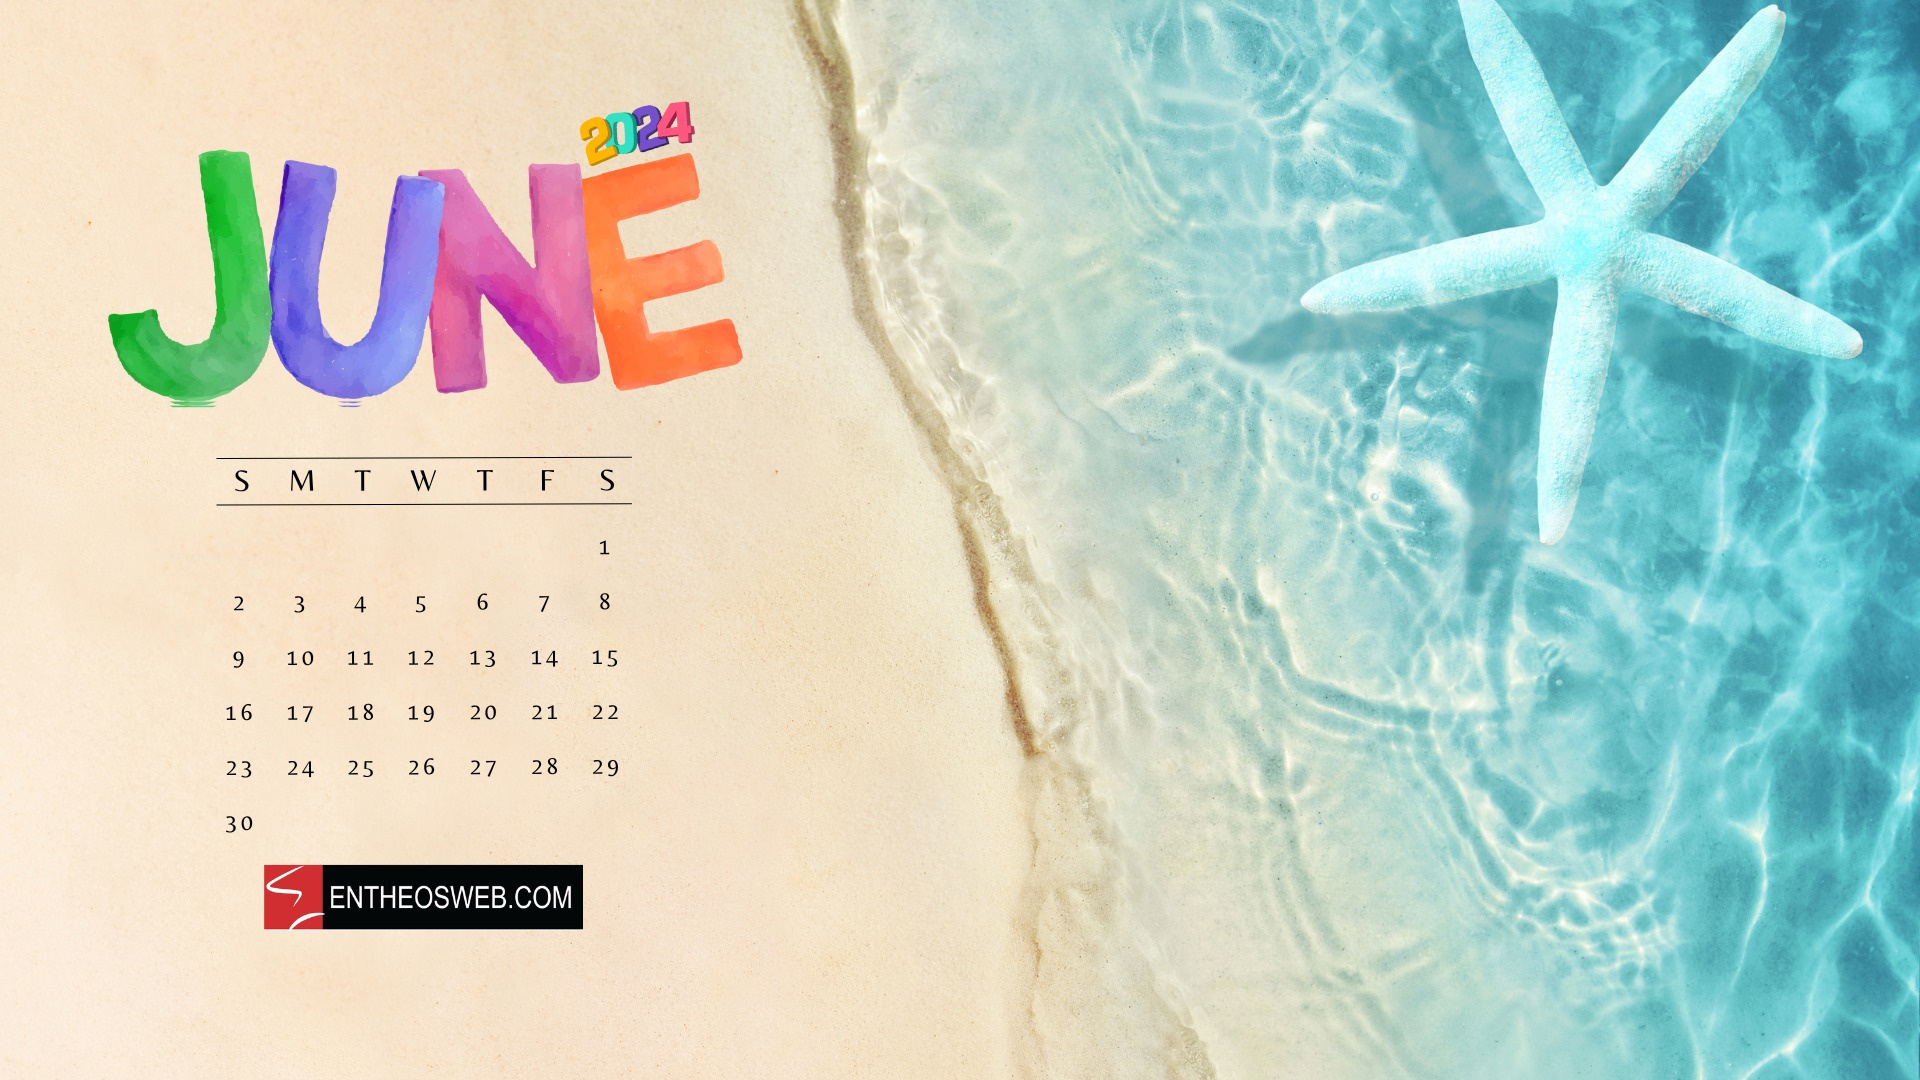 June 2024 Desktop Wallpaper Calendars | Entheosweb with June 2024 Calendar Wallpaper Desktop